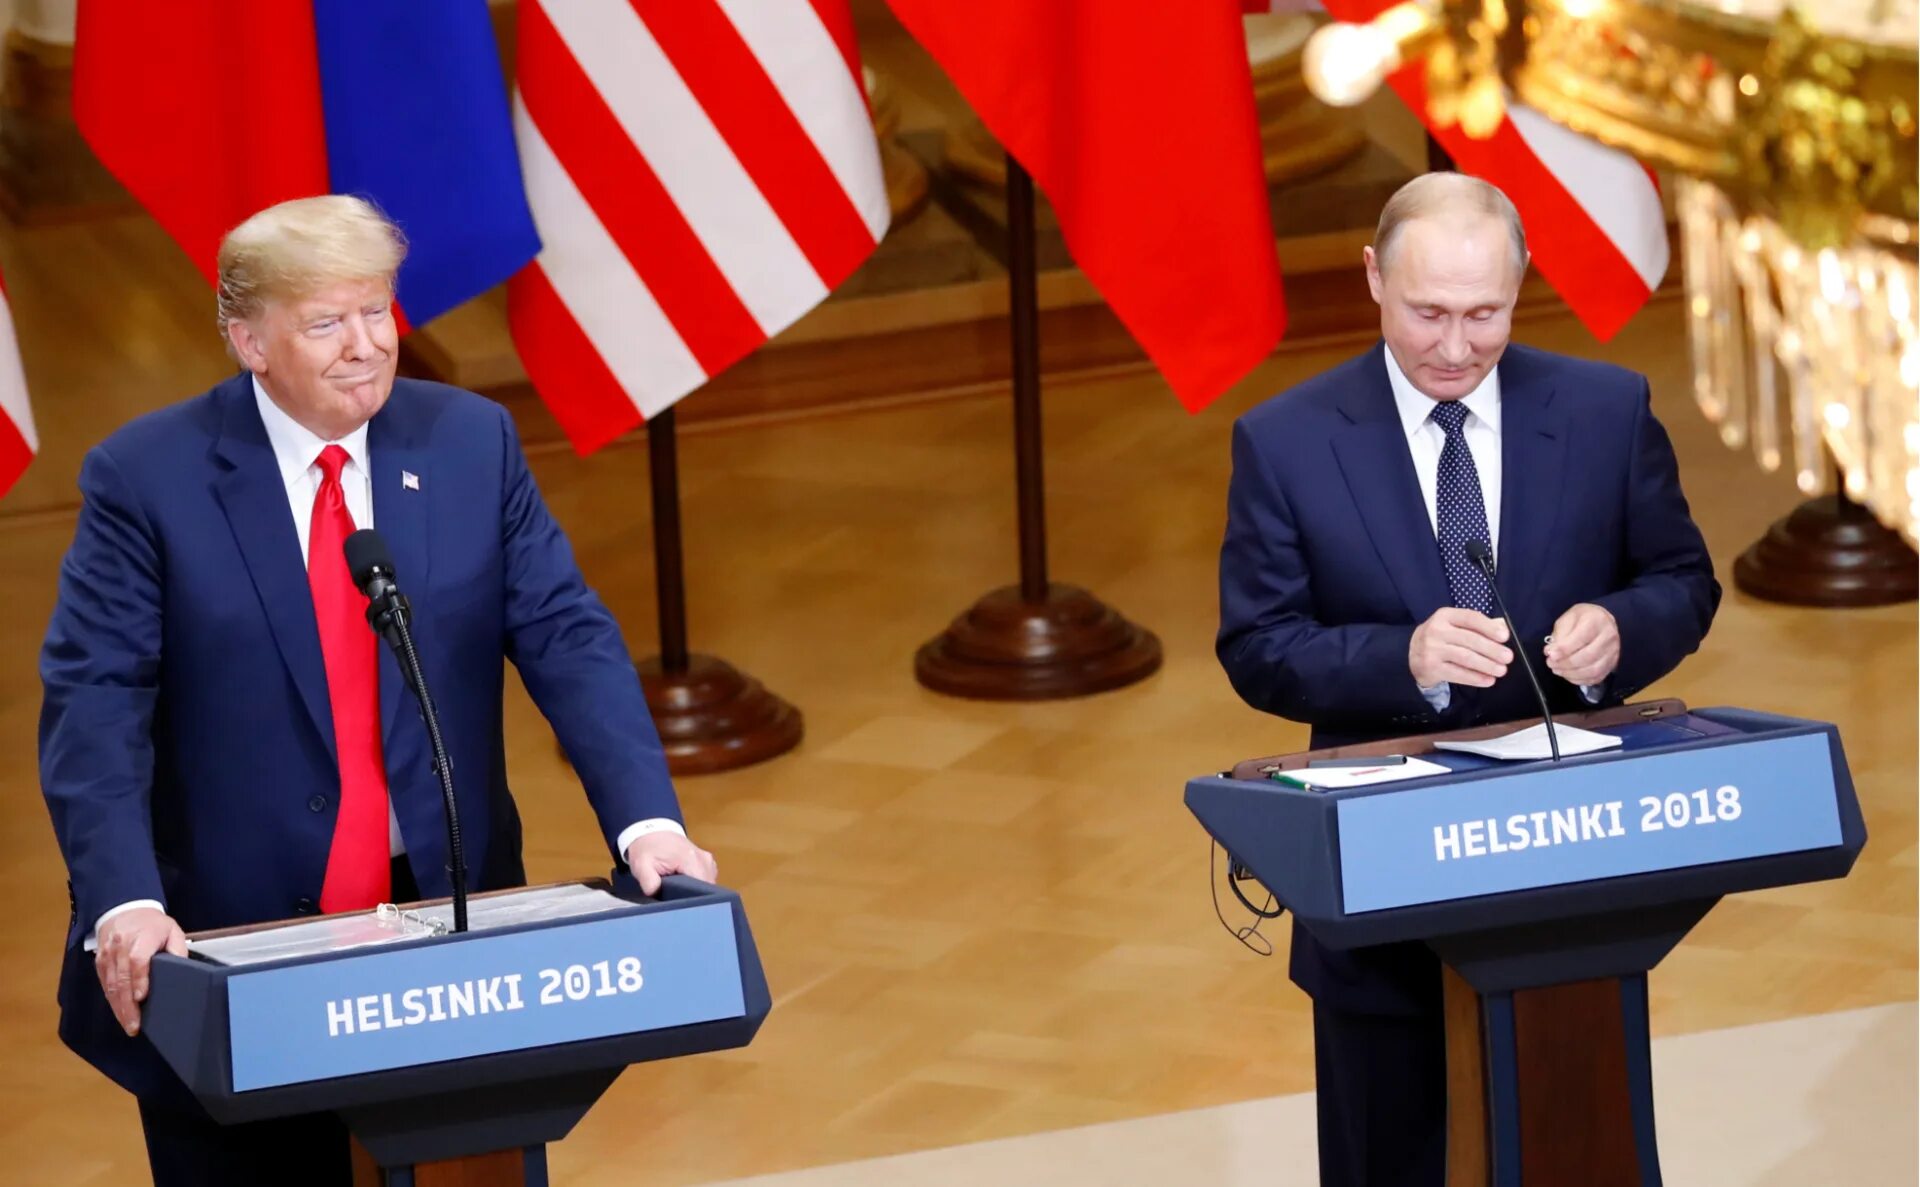 Встреча Путина и Трампа в Хельсинки 2018. Переговоры. Трамп переговоры